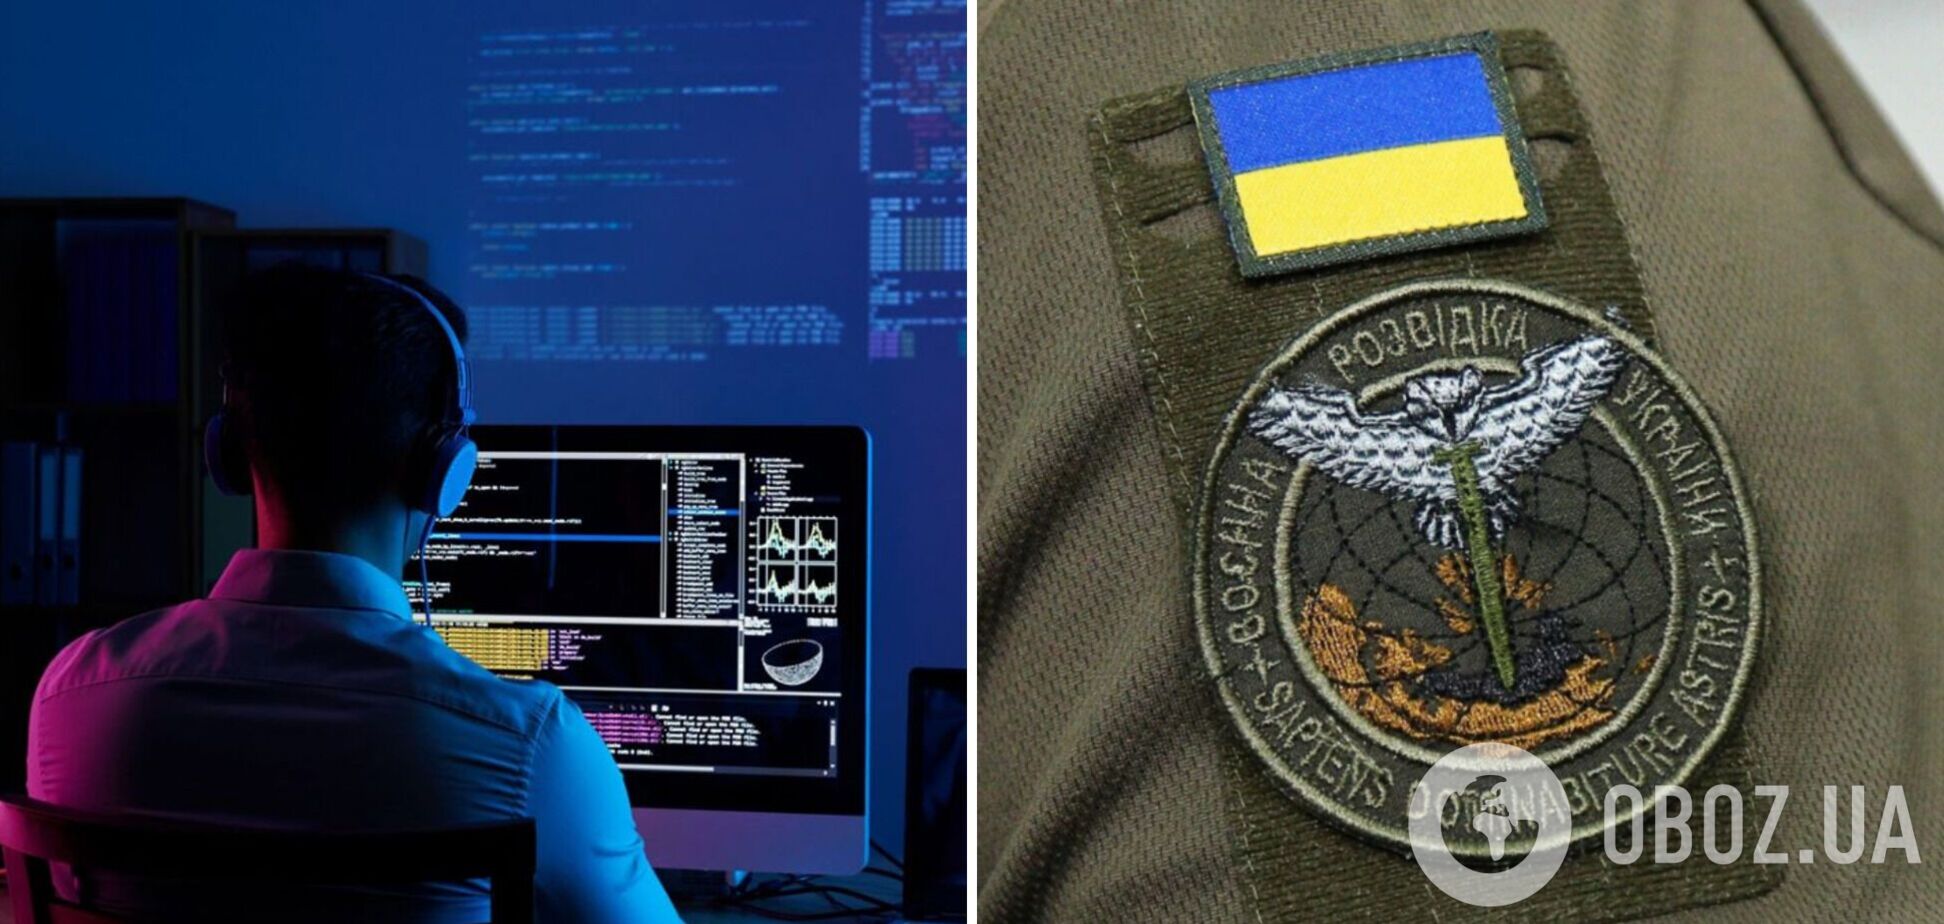 Хакеры атаковали НПЗ в Краснодарском крае: уничтожены серверы и резервные копии данных